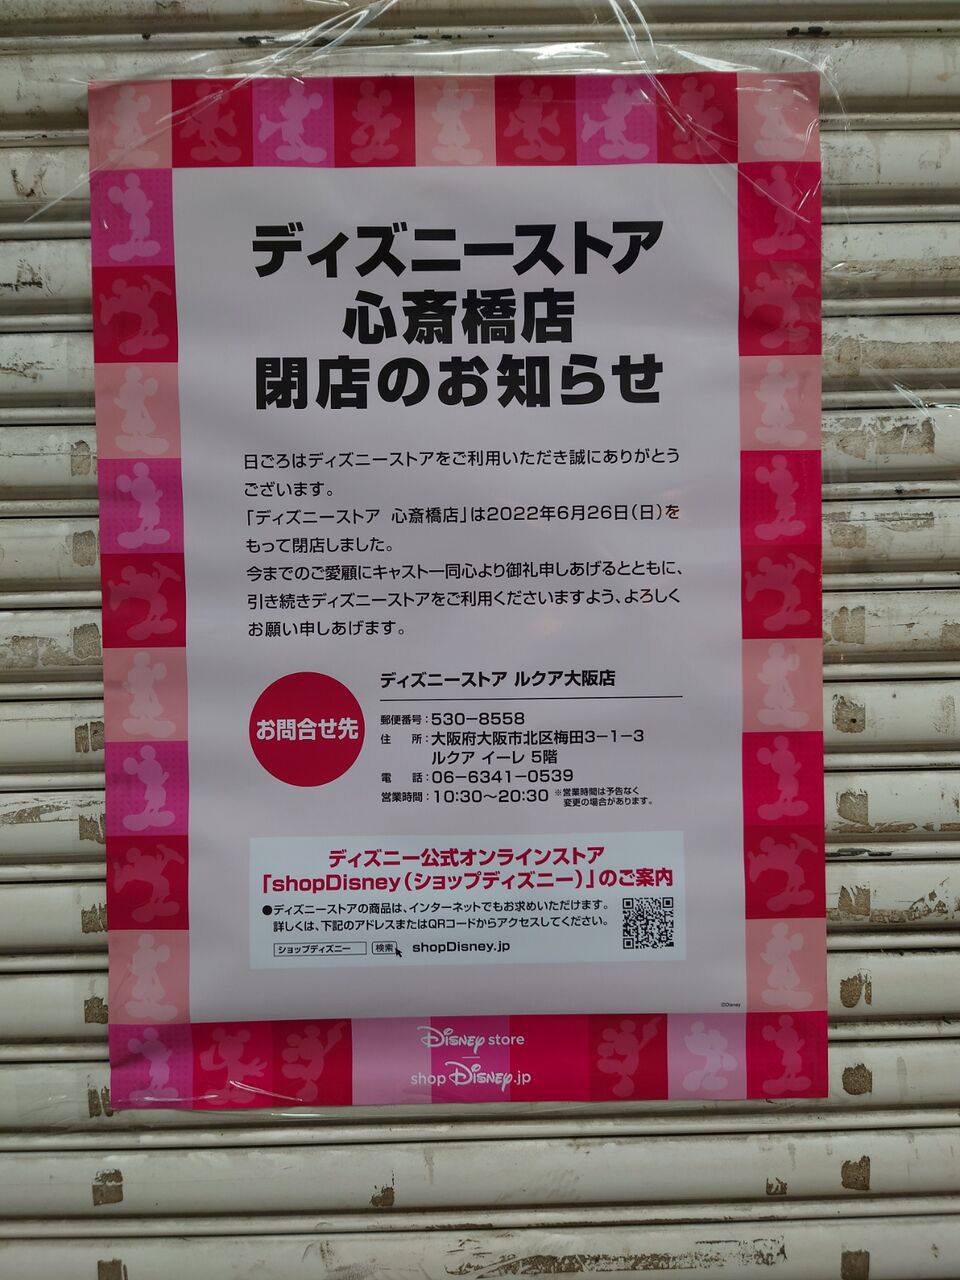 悲報 心斎橋筋のディズニーストア閉店してた 大阪ちょっとした広報部